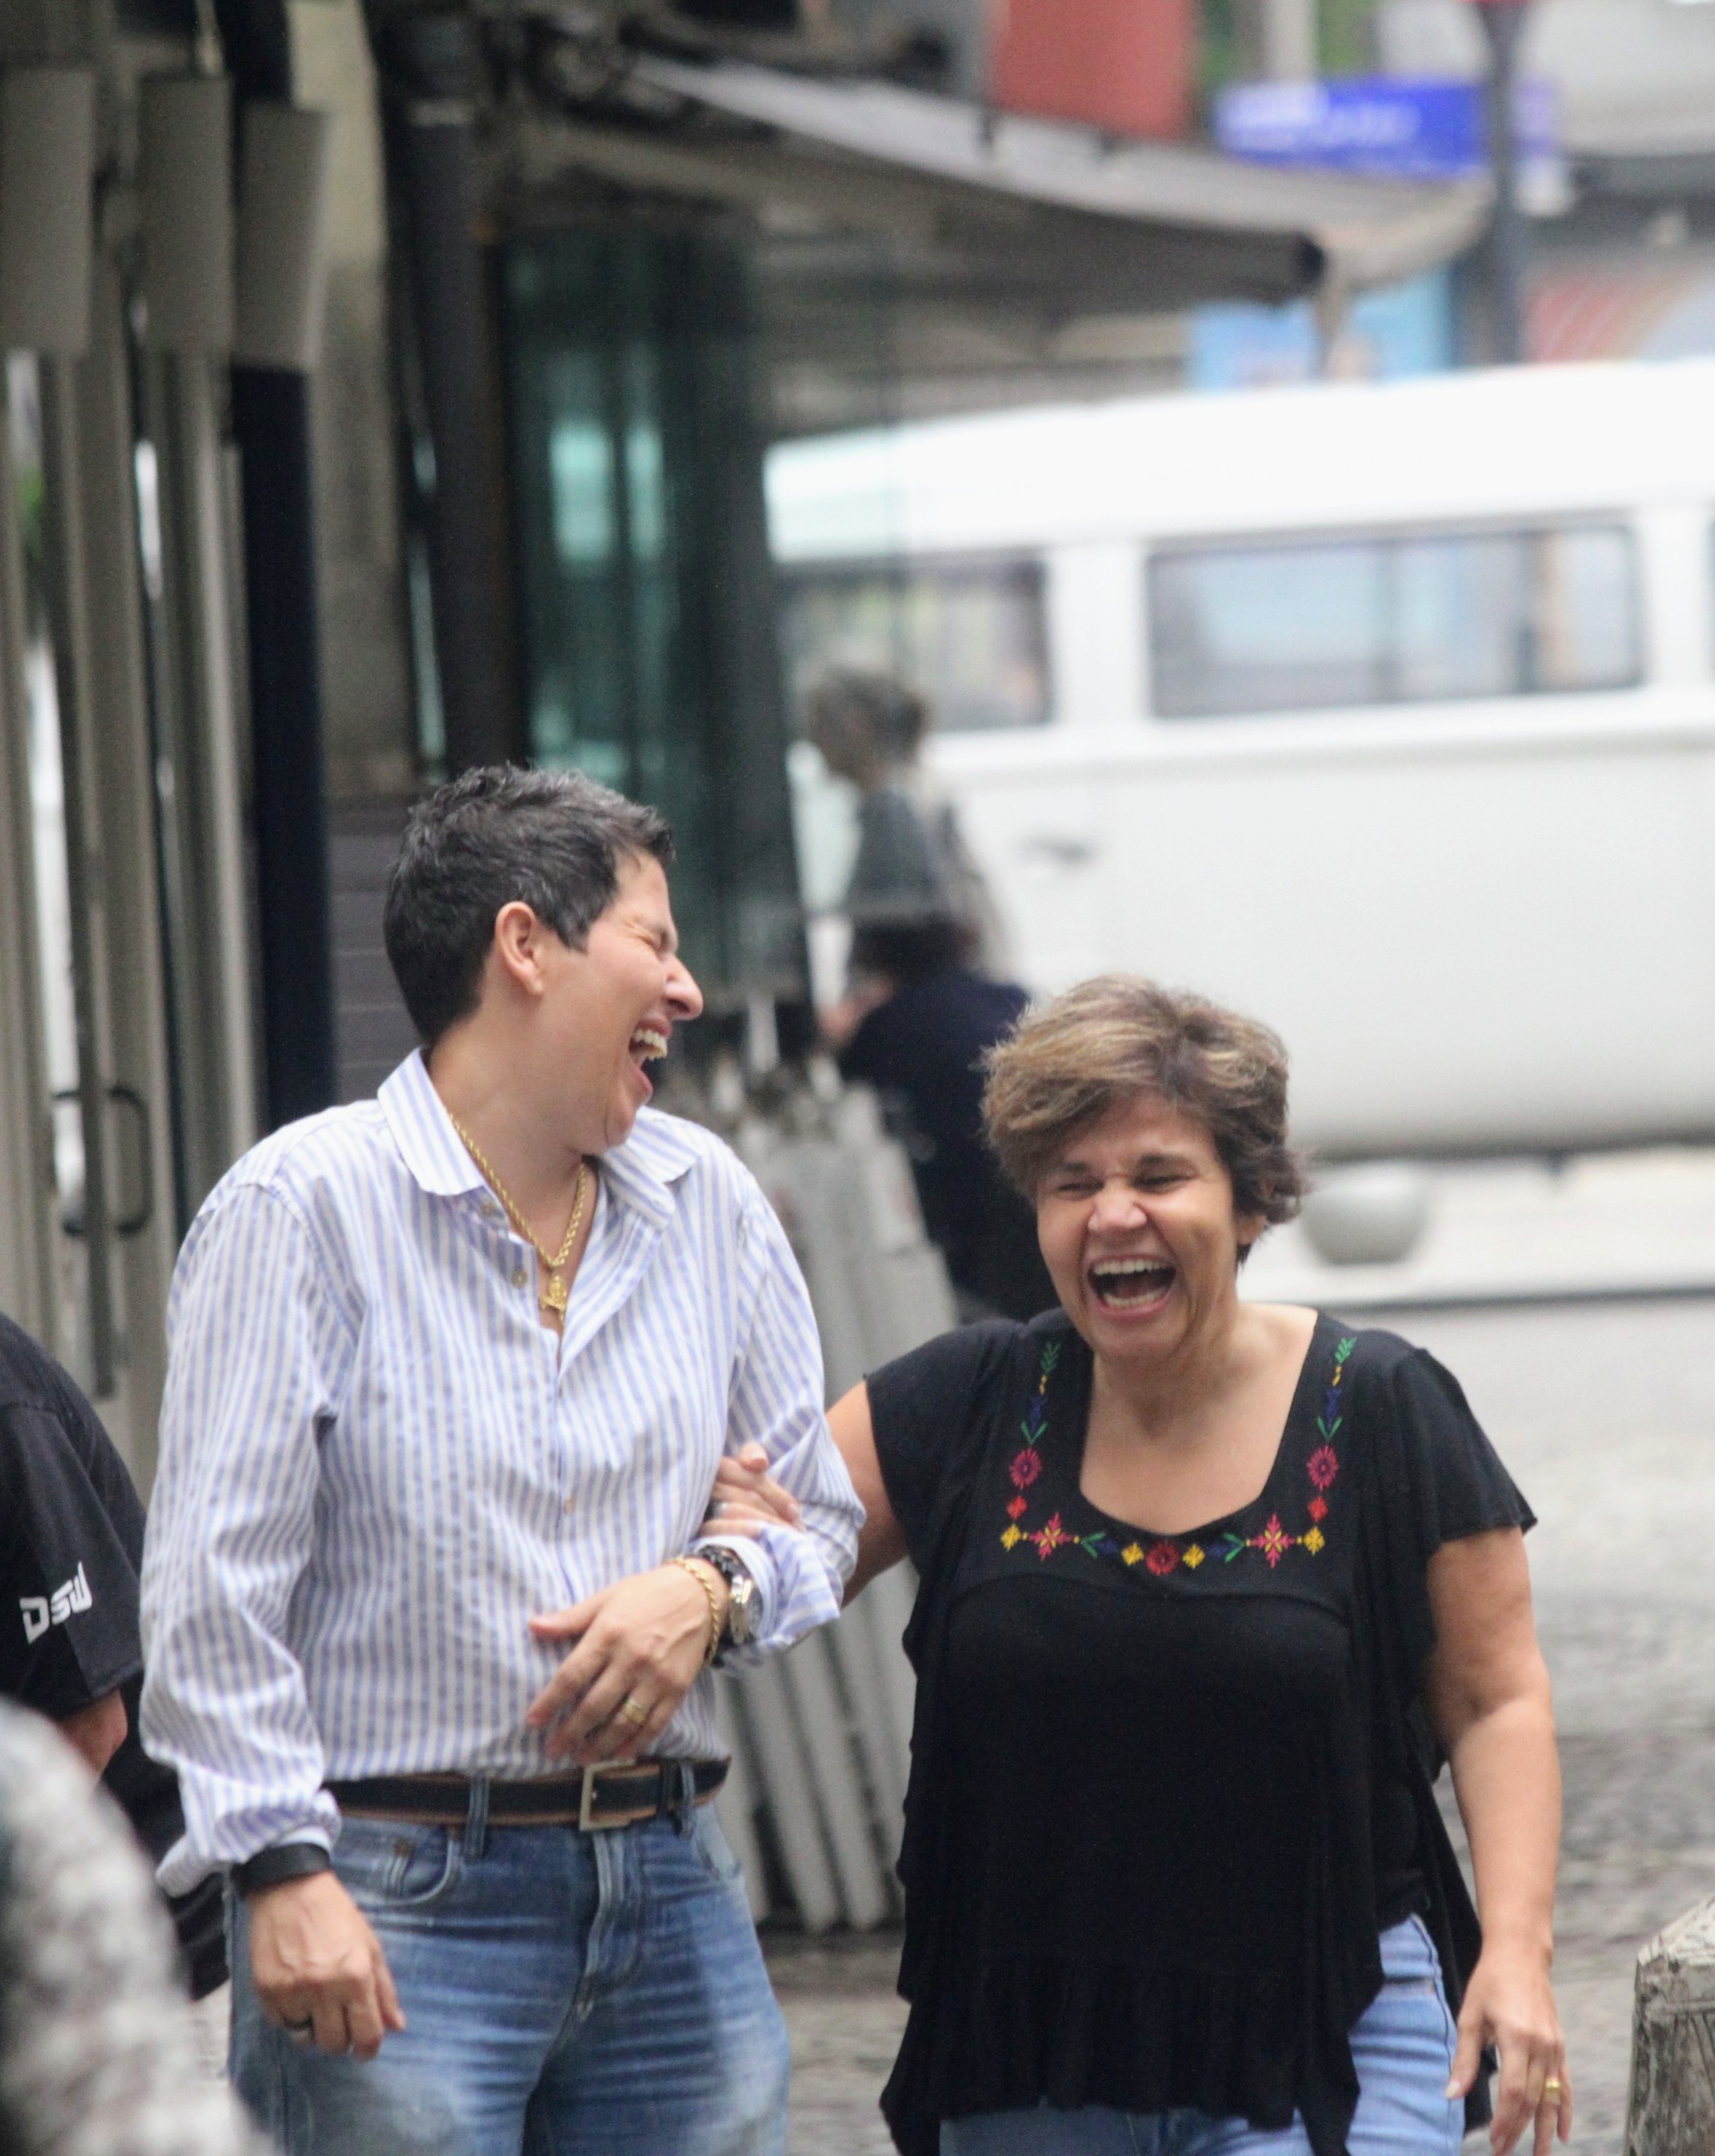 Foto de Adriane Bonato de braço dado com Claudia Rodrigues, ambas rindo muito enquanto caminham pela rua